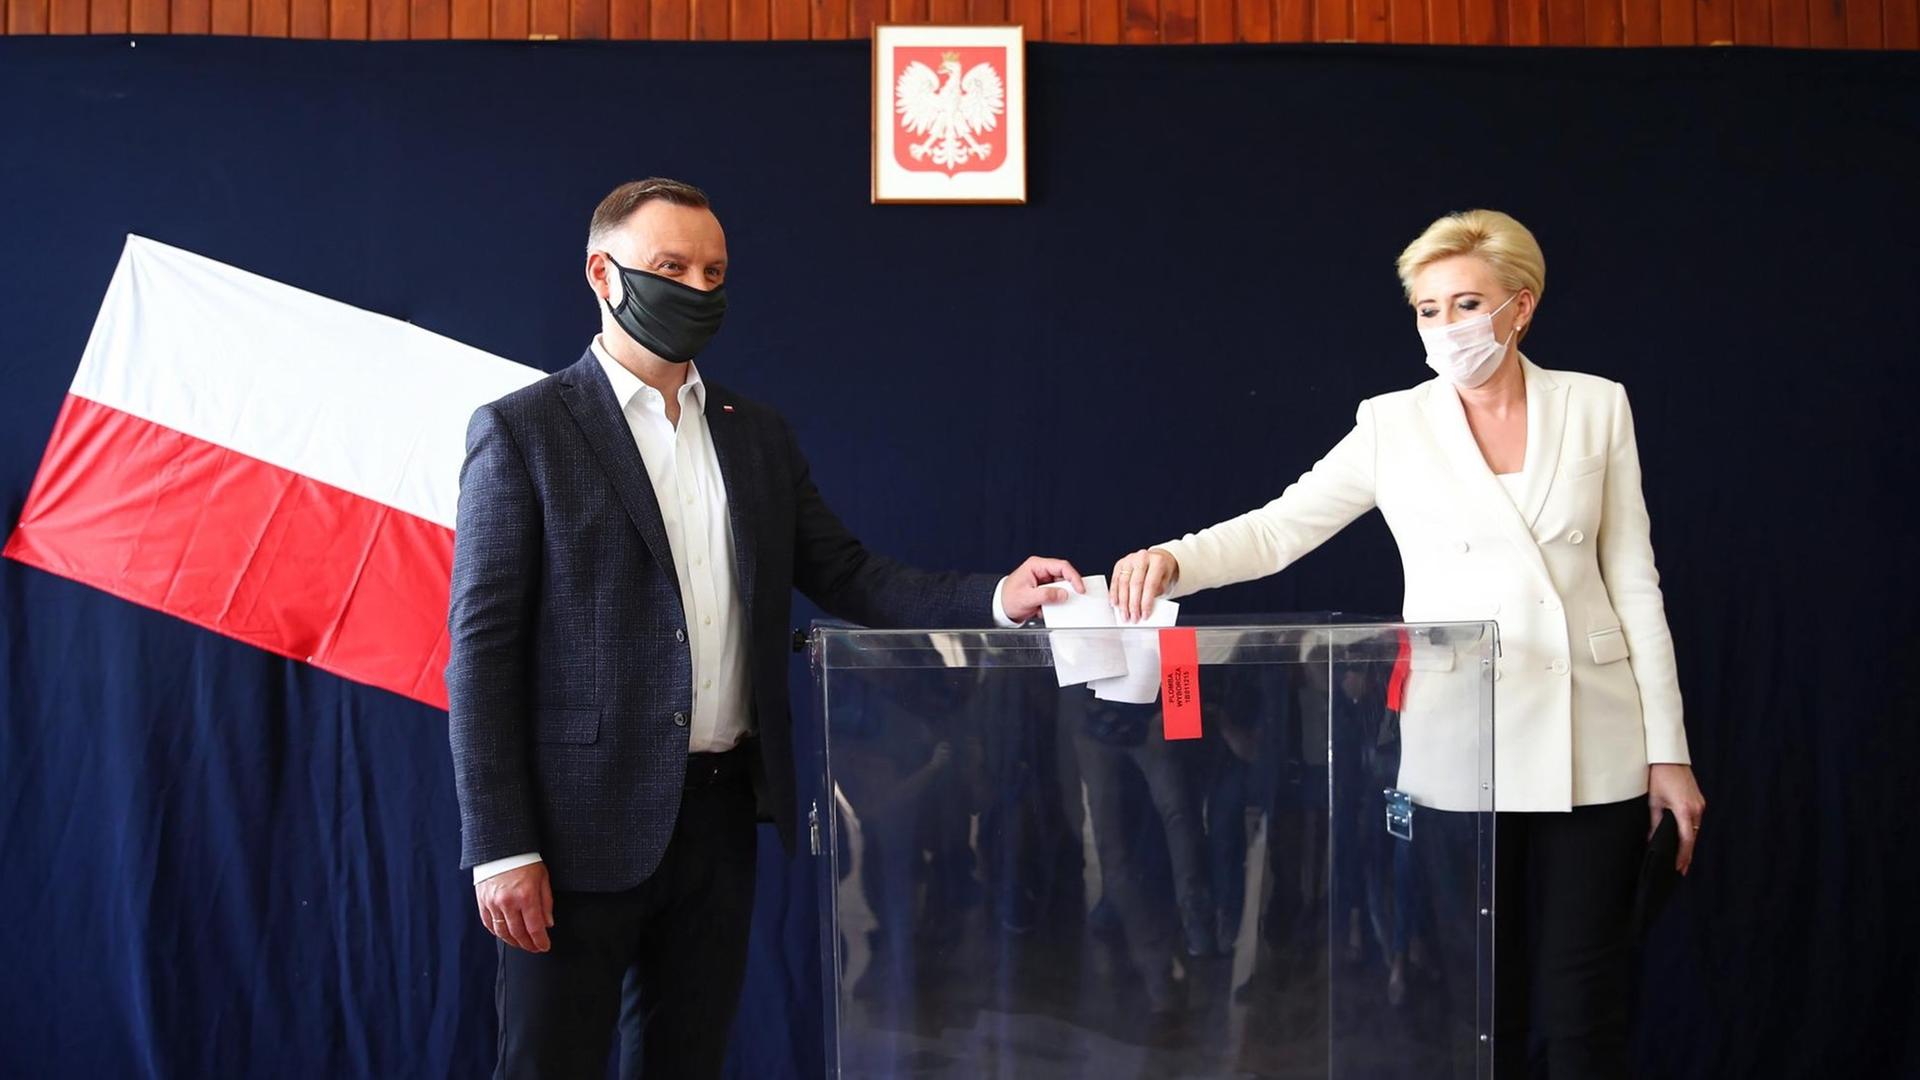 Andrzej Duda, Präsident von Polen und Kandidat für das Amt des Präsidenten der PiS, und seine Frau Agata Kornhauser-Duda. Sie tragen eine Stoffmaske, als sie bei der Präsidentschaftswahl in einem Wahllokal ihre Stimme abgeben.